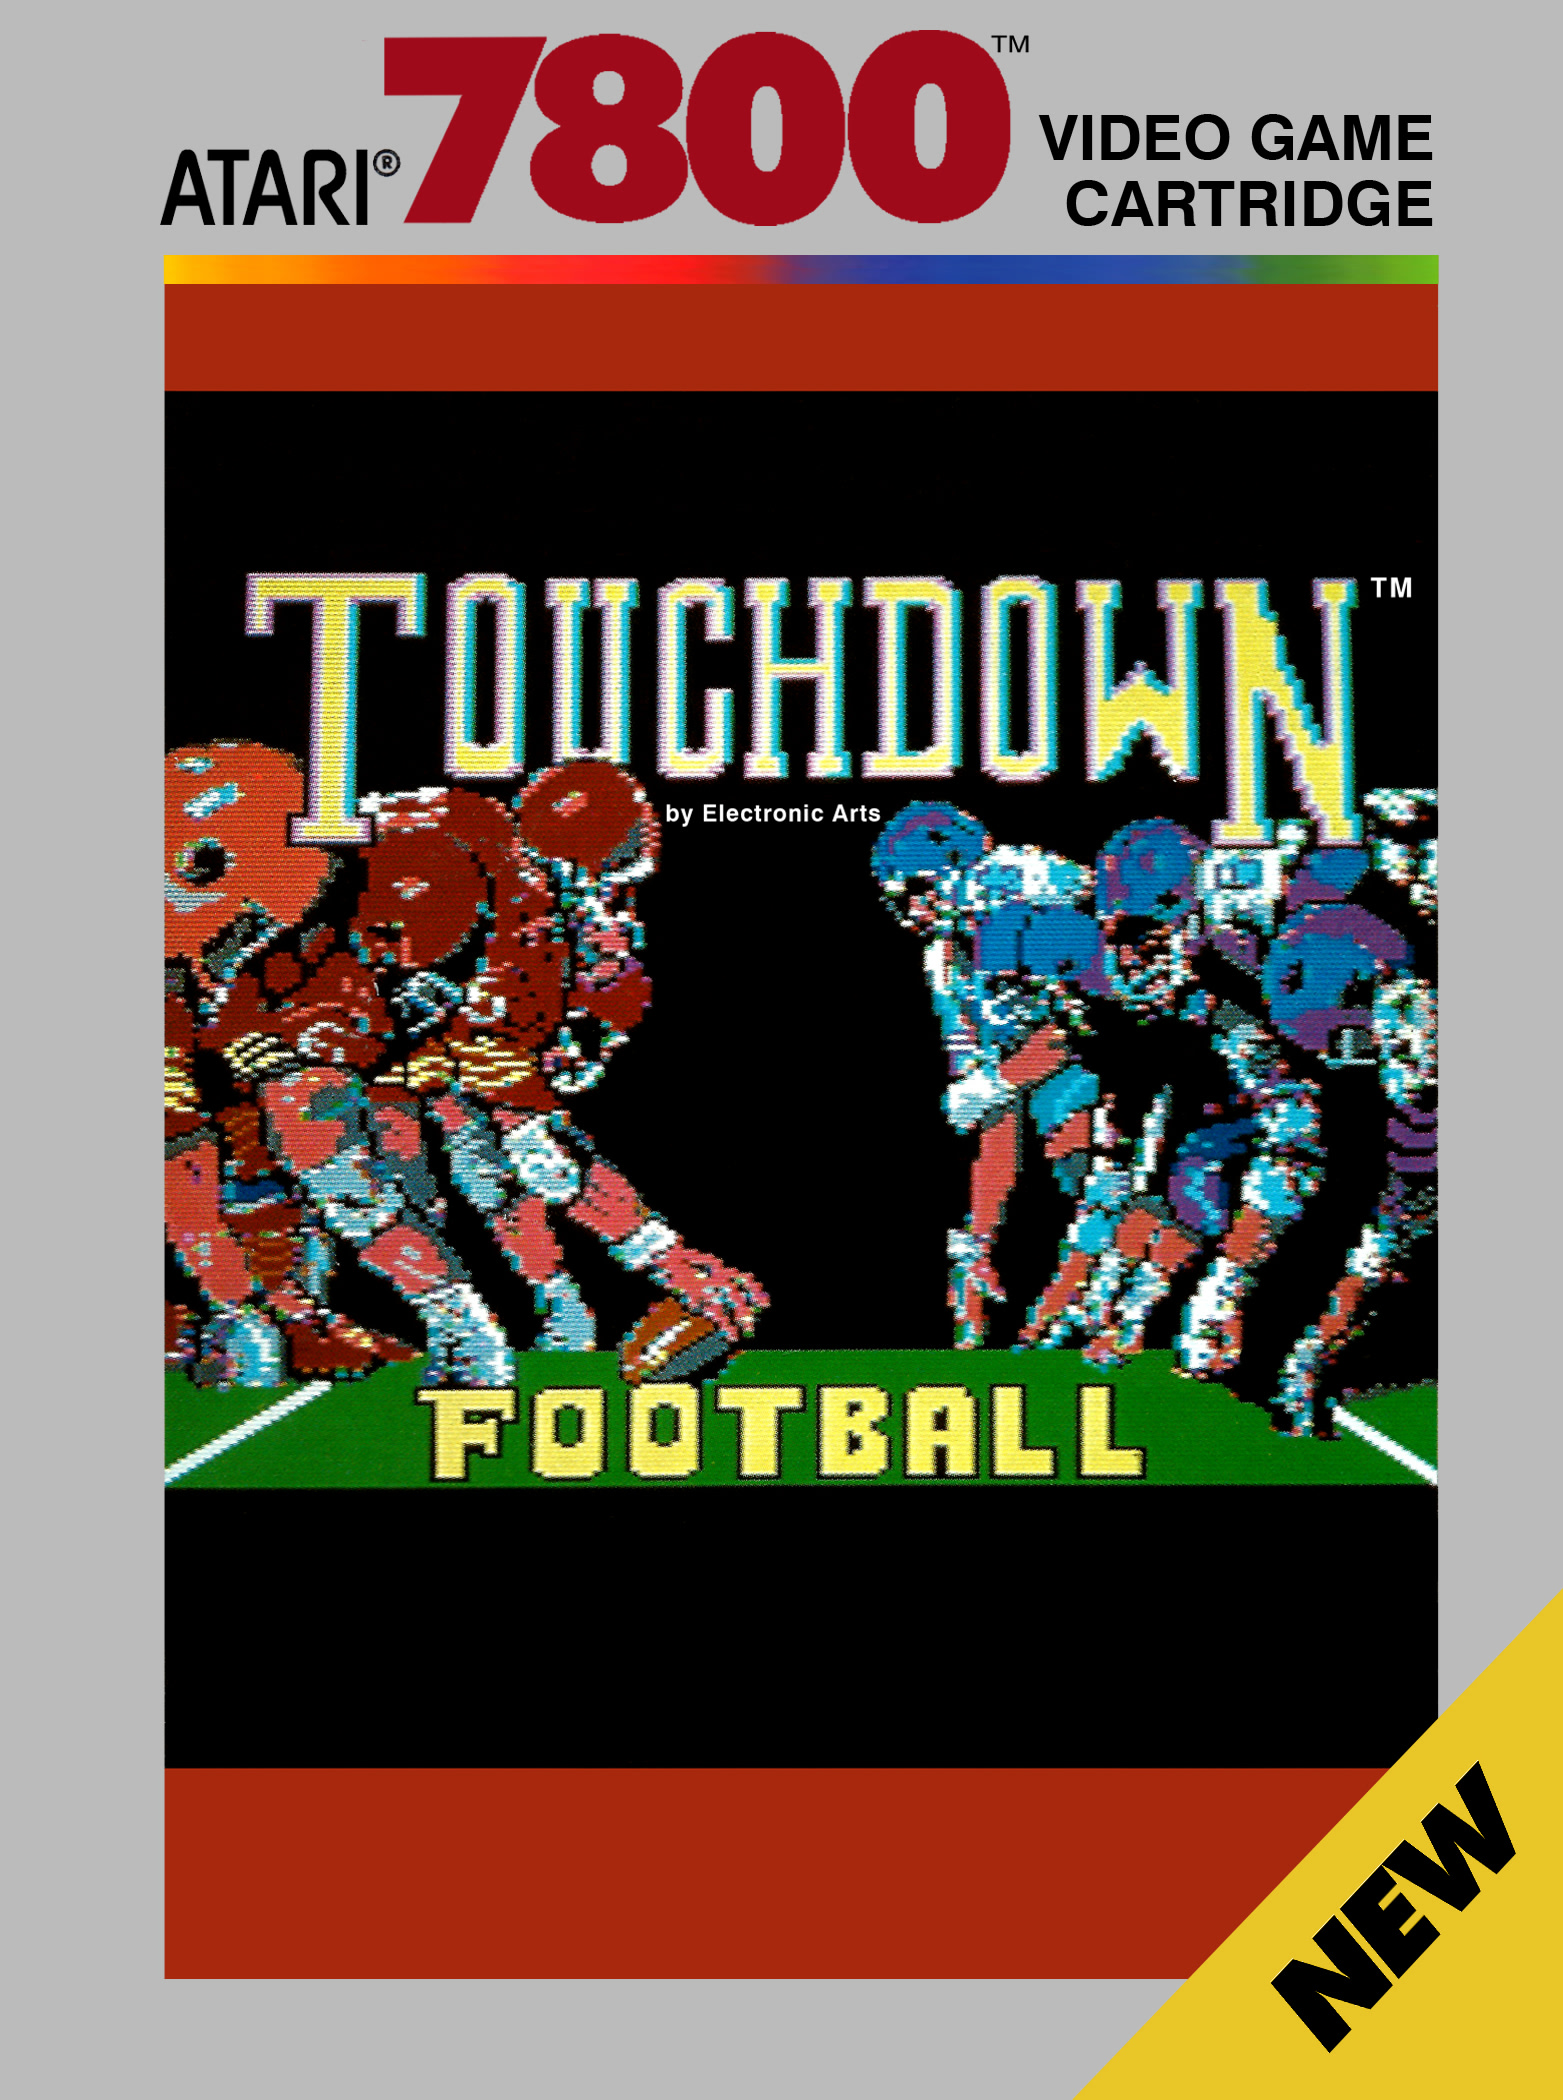 Touchdown Football ROM